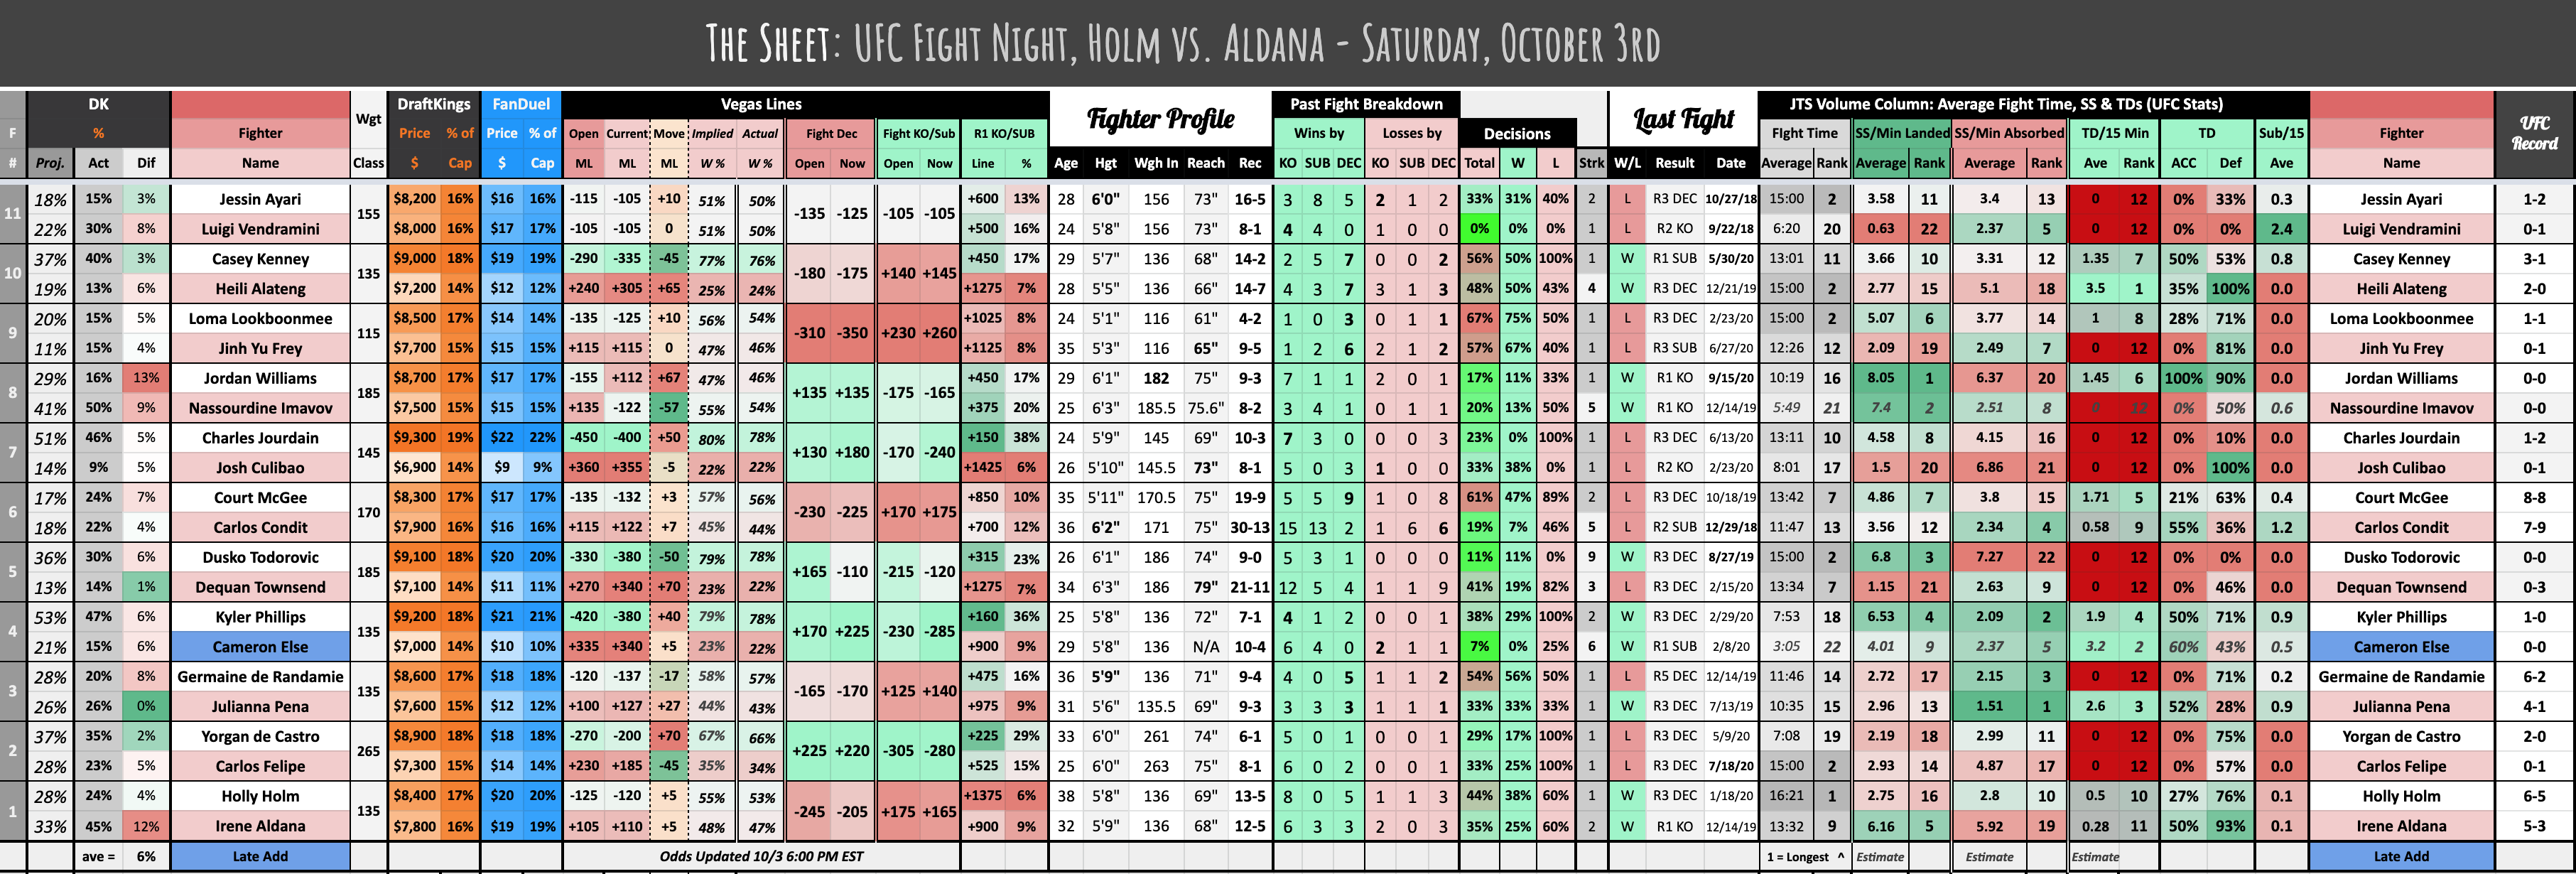 The Sheet: UFC Fight Night, Holm vs. Aldana - Saturday, October 3rd